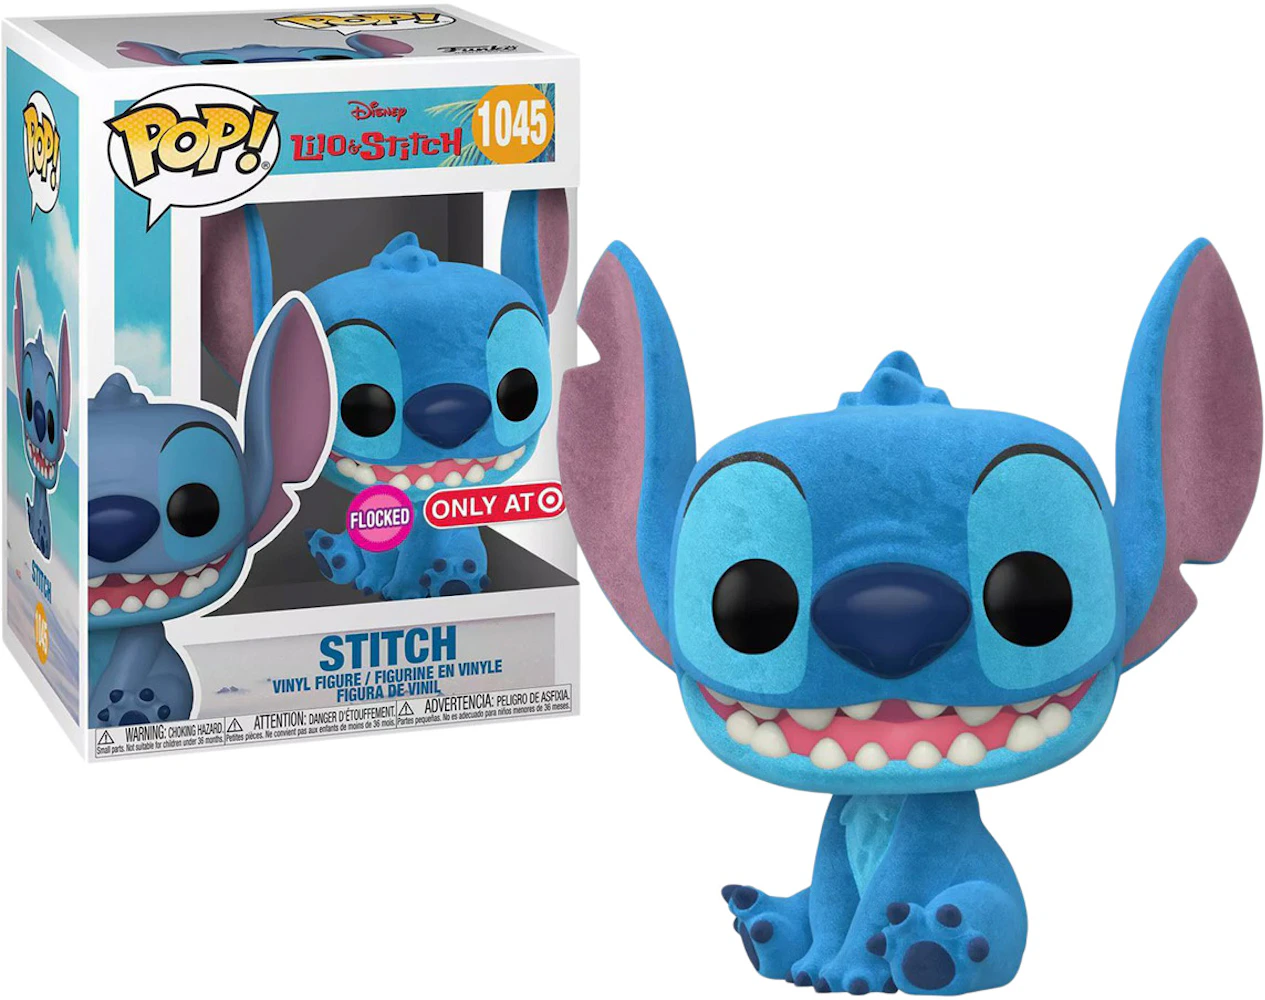 Funko Pop! Moment Disney Lilo & Stitch (Lilo & Stitch in Hammock) Hot Topic  Exclusive Figure #1200